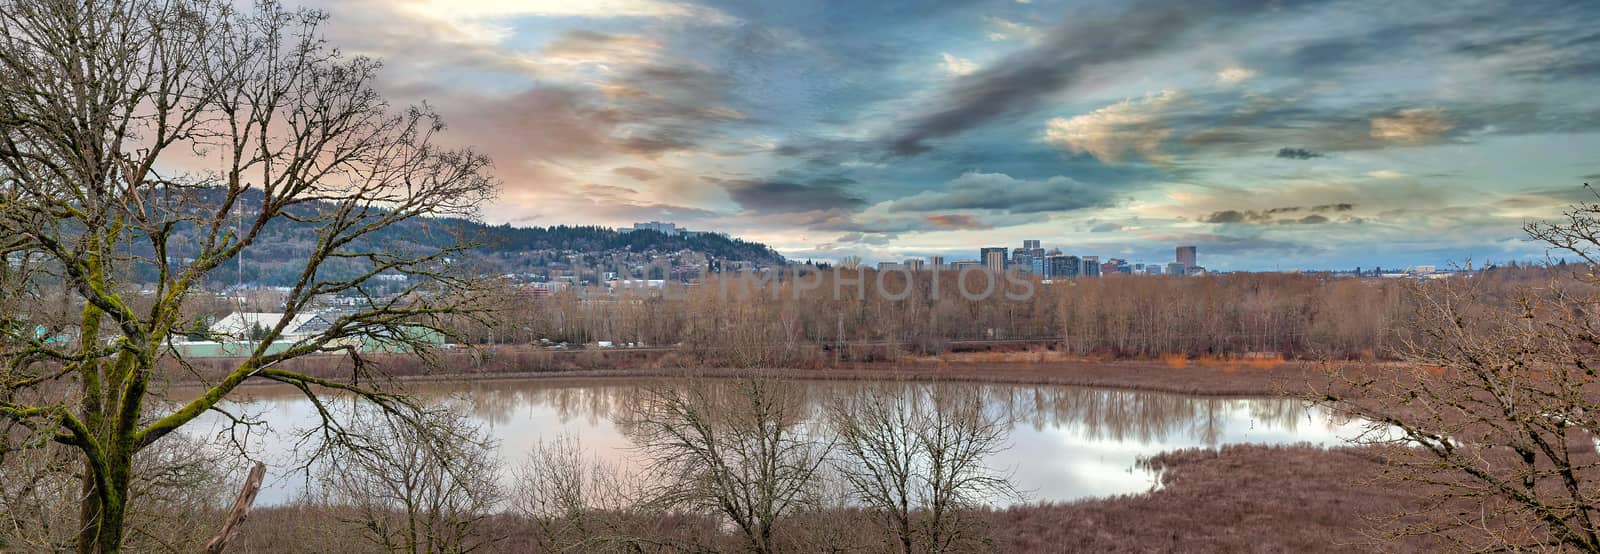 Oaks Bottom Wildlife Refuge with city of Portland Oregon skyline at sunset panorama